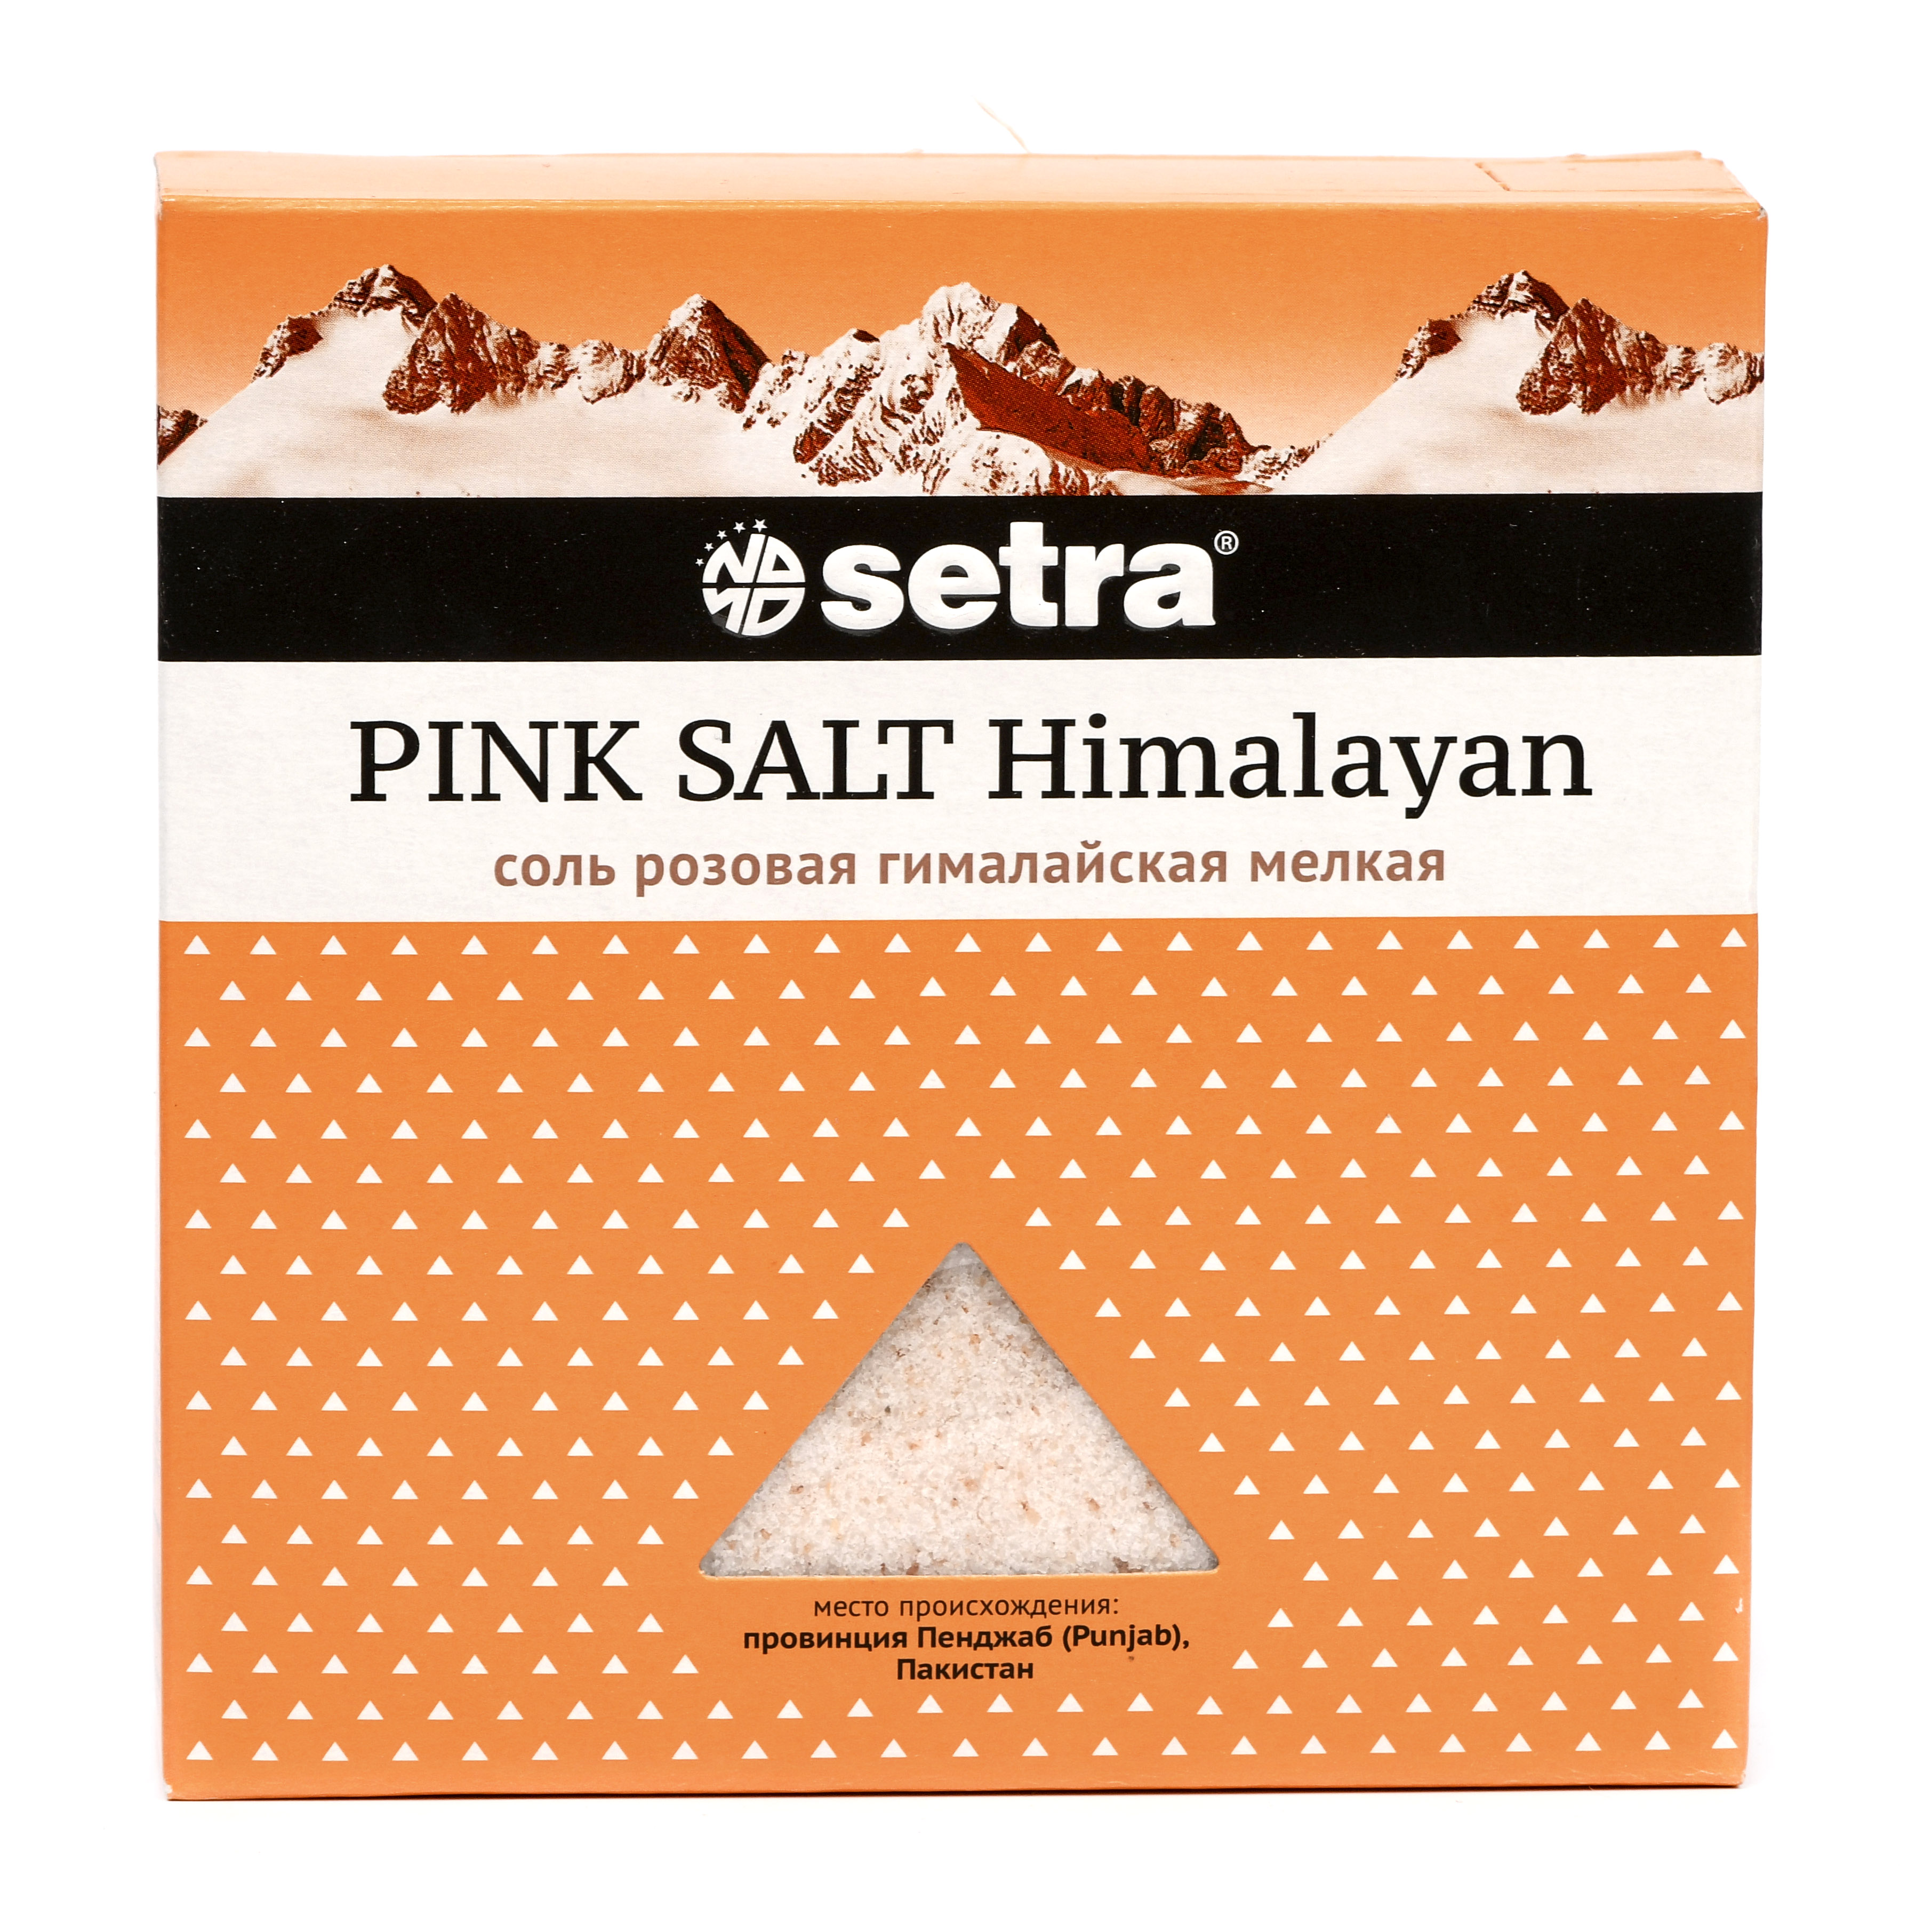 Соль розовая гималайская мелкая, Setra - 500 г